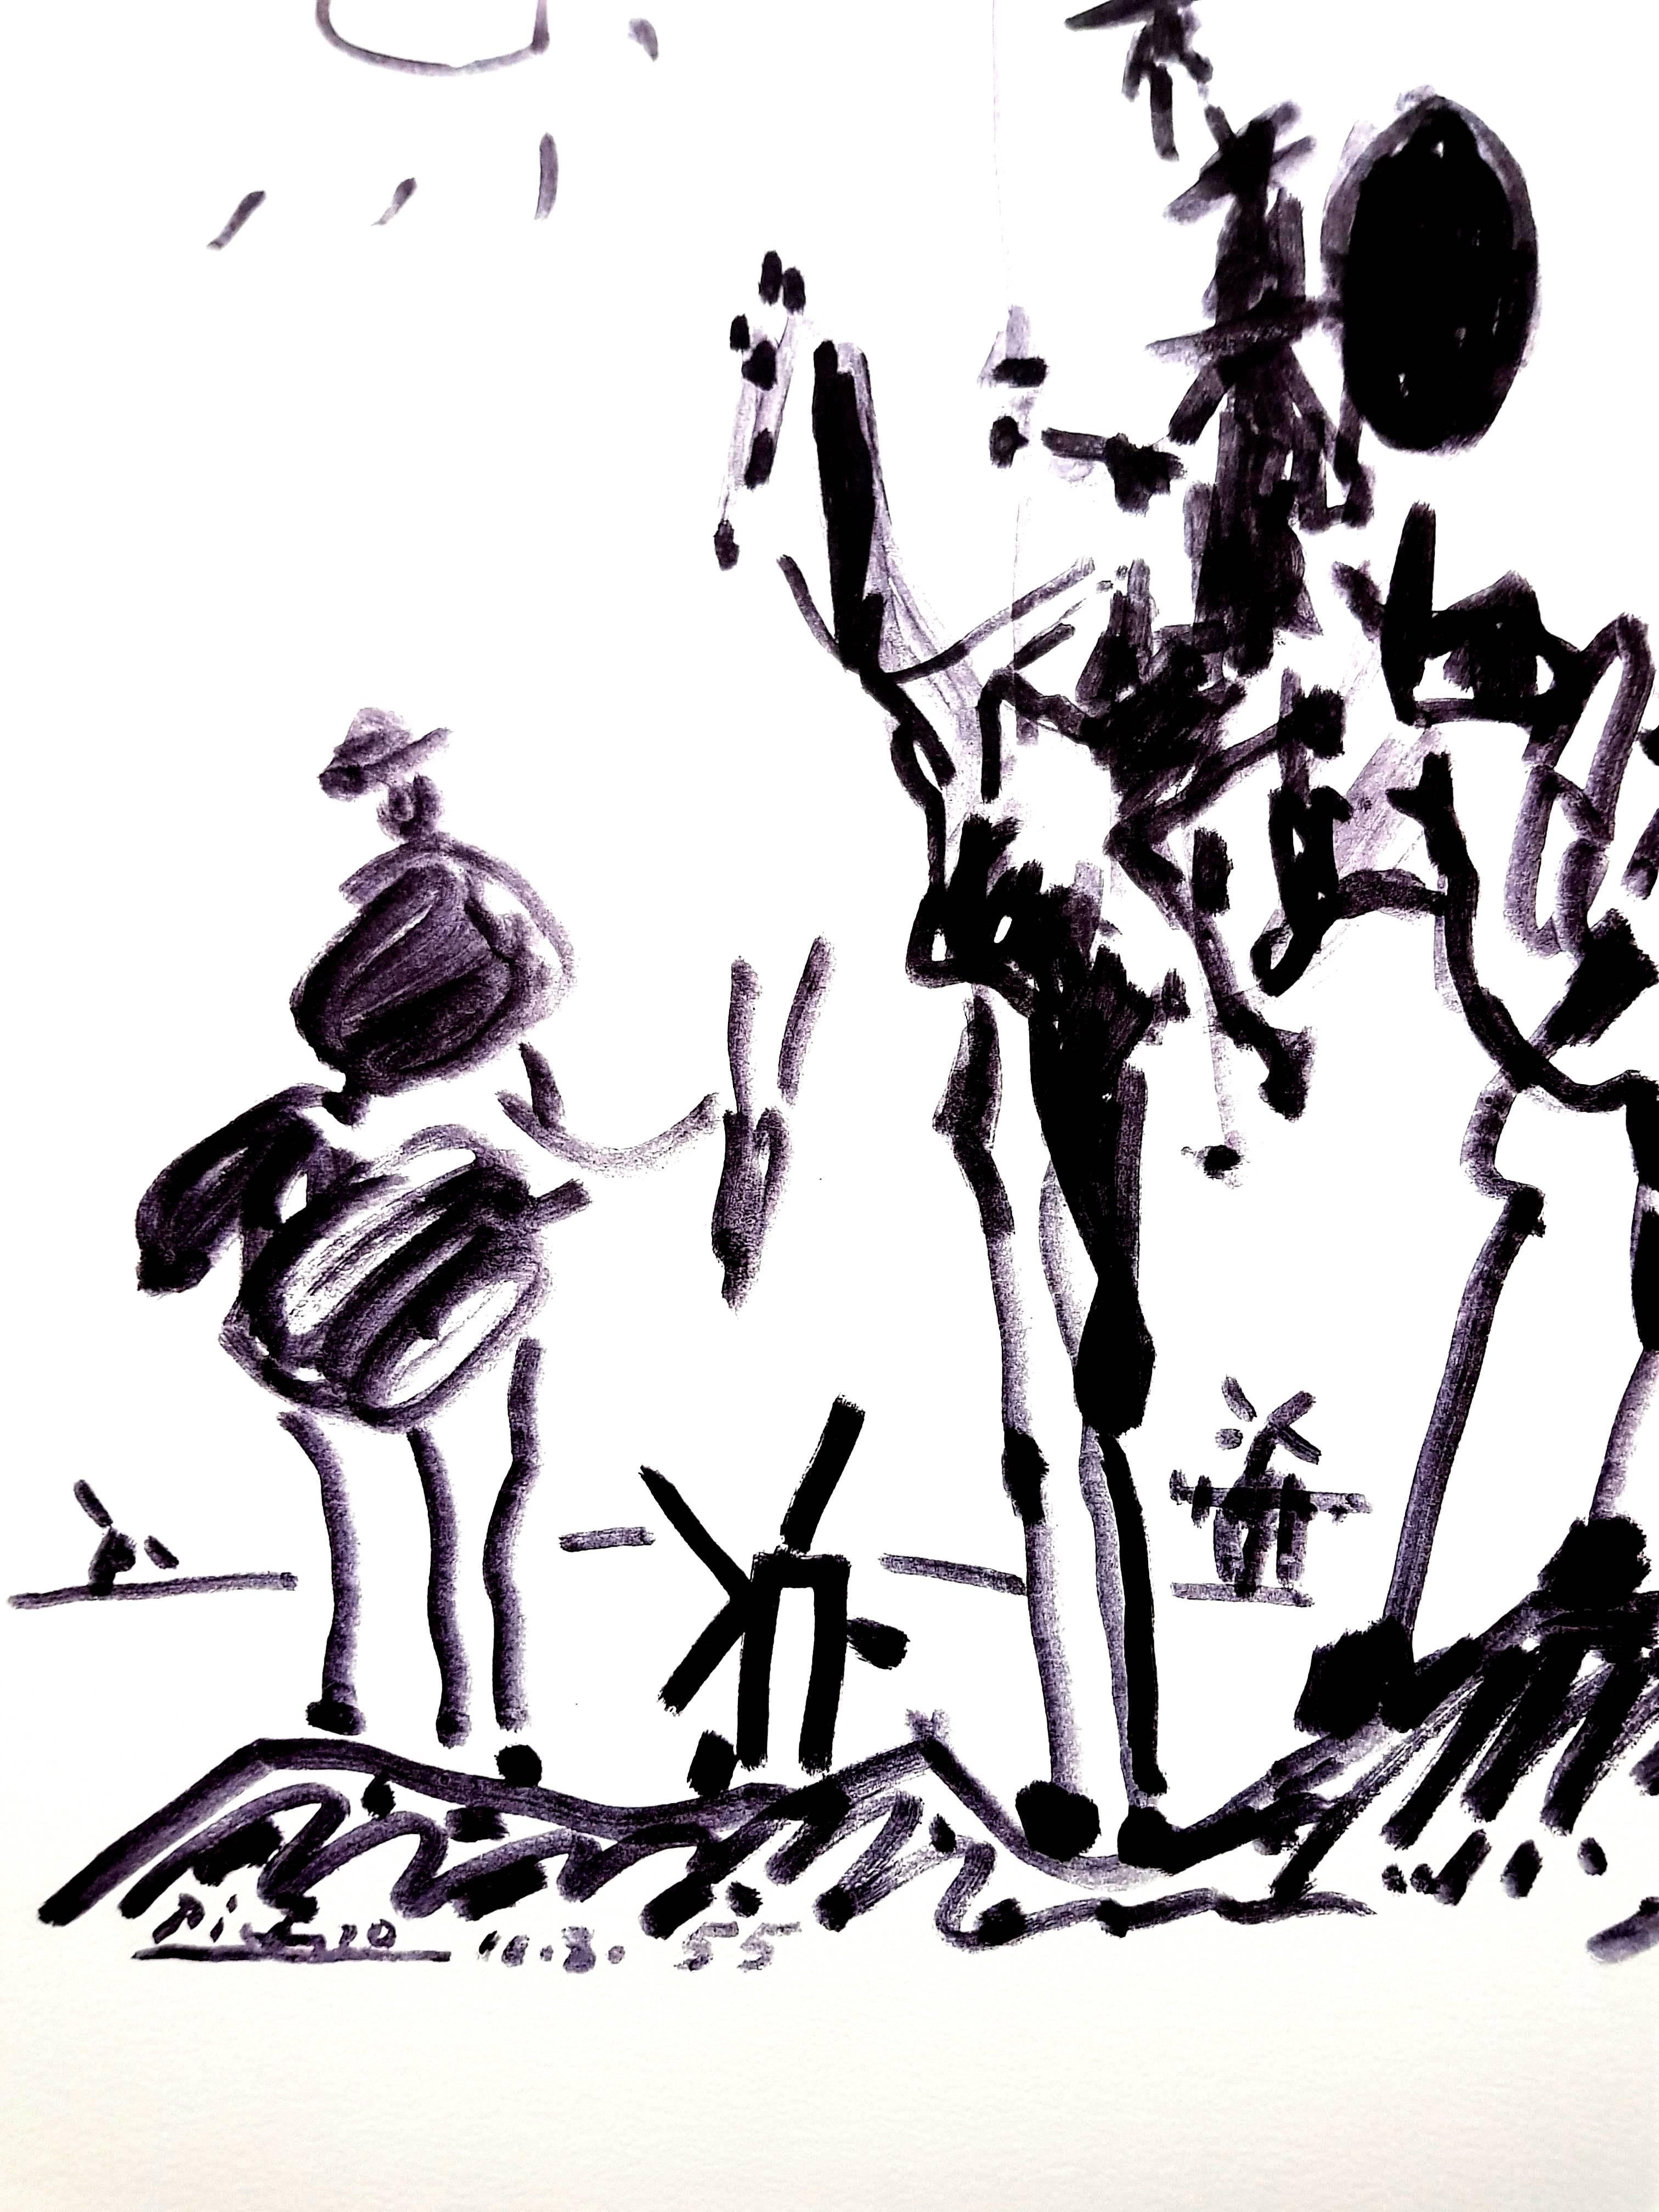 After PABLO PICASSO (1881-1973)
Don Quixote
1955
Dimensions: 65 x 50 cm
Printed signature and date
Edition Succession Picasso, Paris (posthumous reproductive edition)
Editions de la Paix